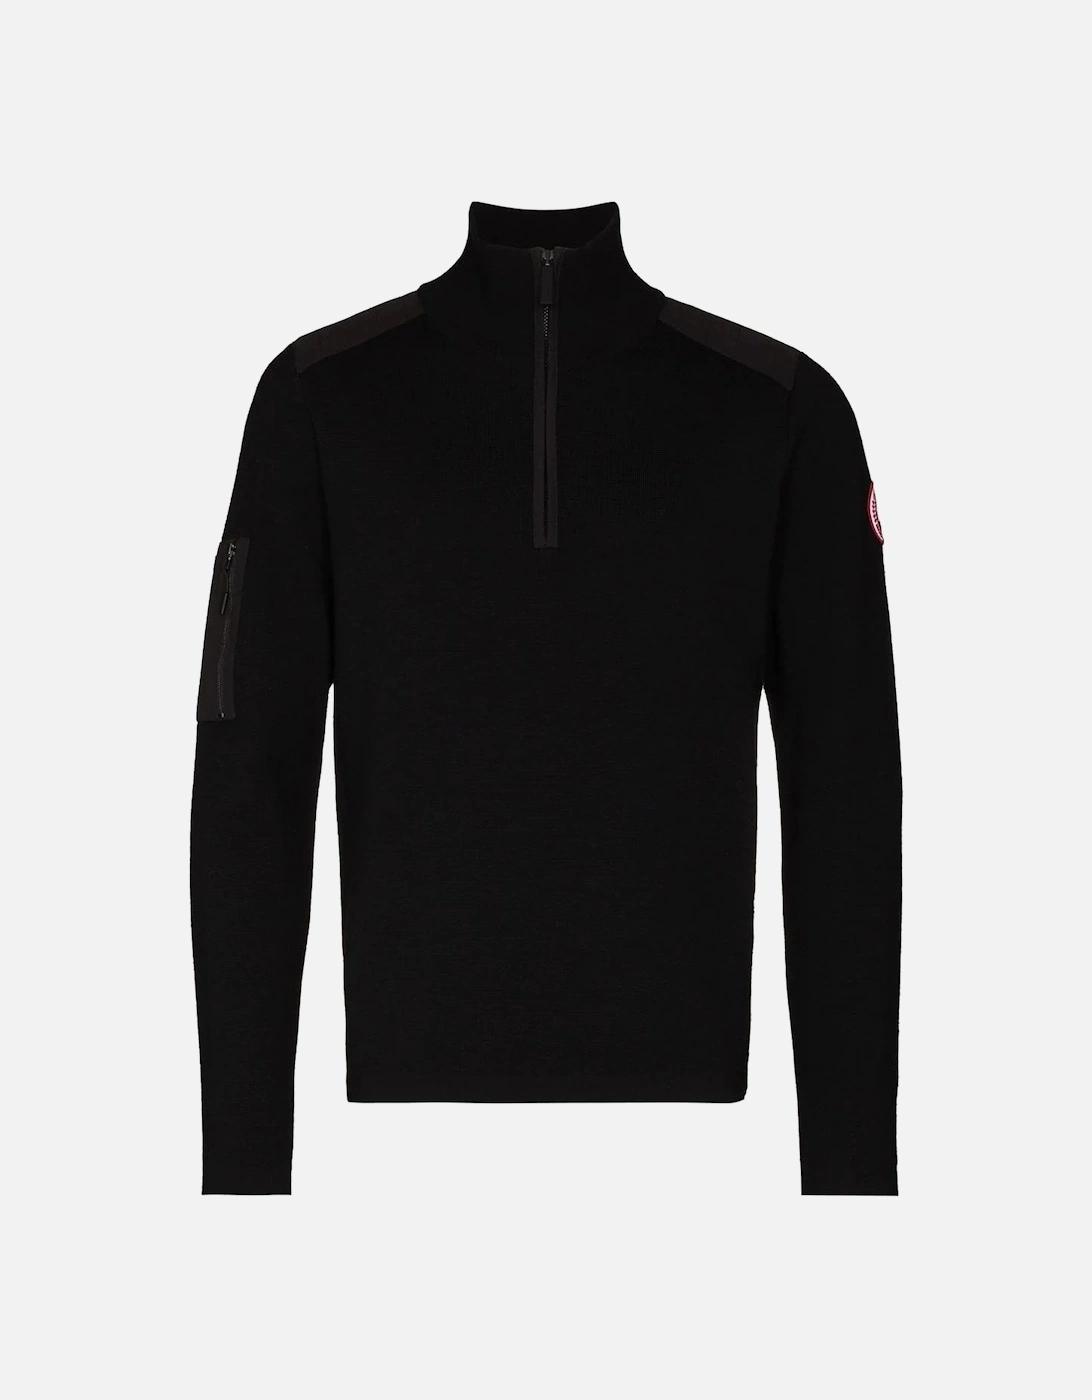 Stormont 1/4 Zip Sweater Black, 6 of 5